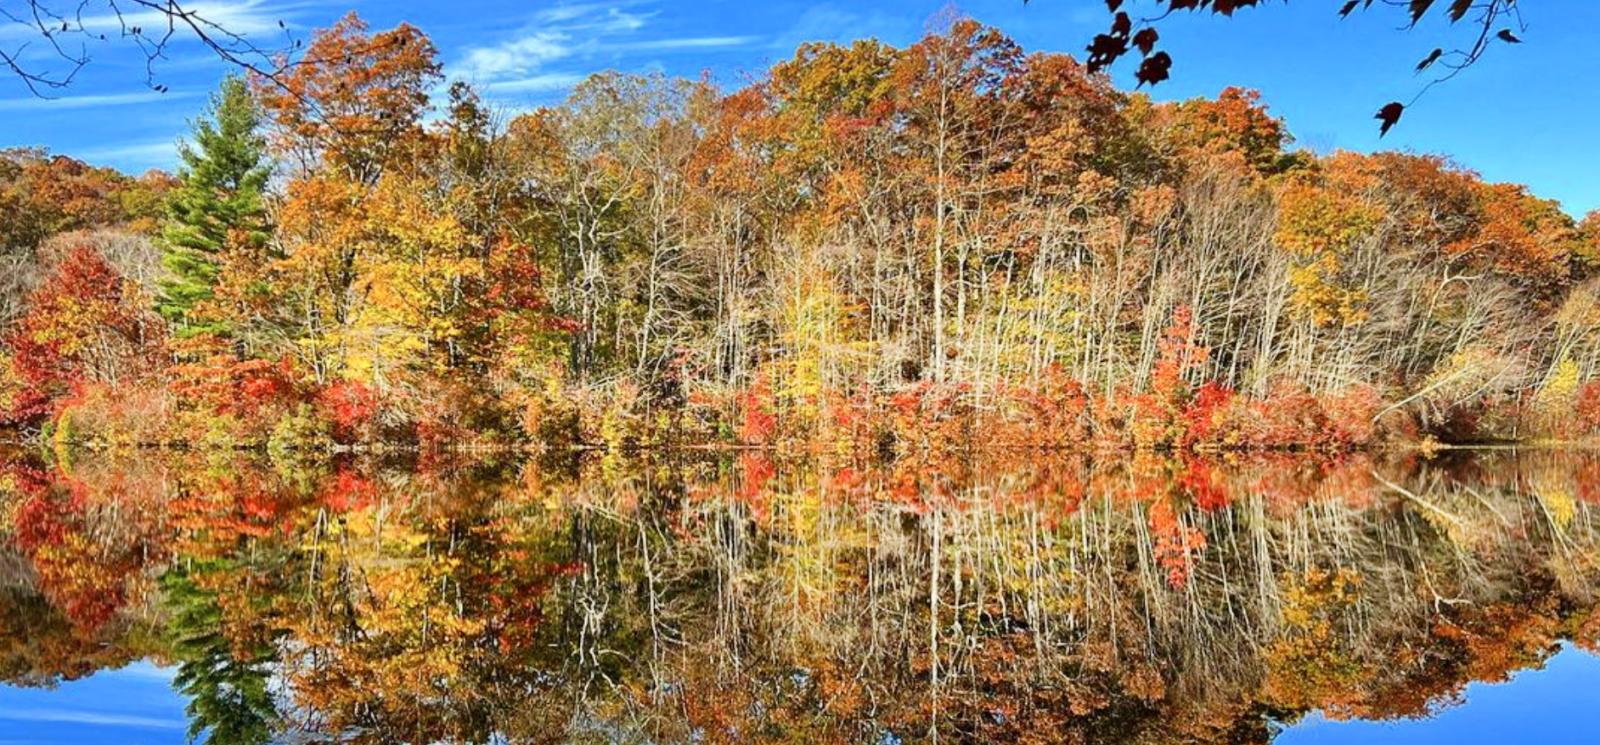 Estanque que refleja árboles de otoño y cielo azul (Instagram@jrstclair)